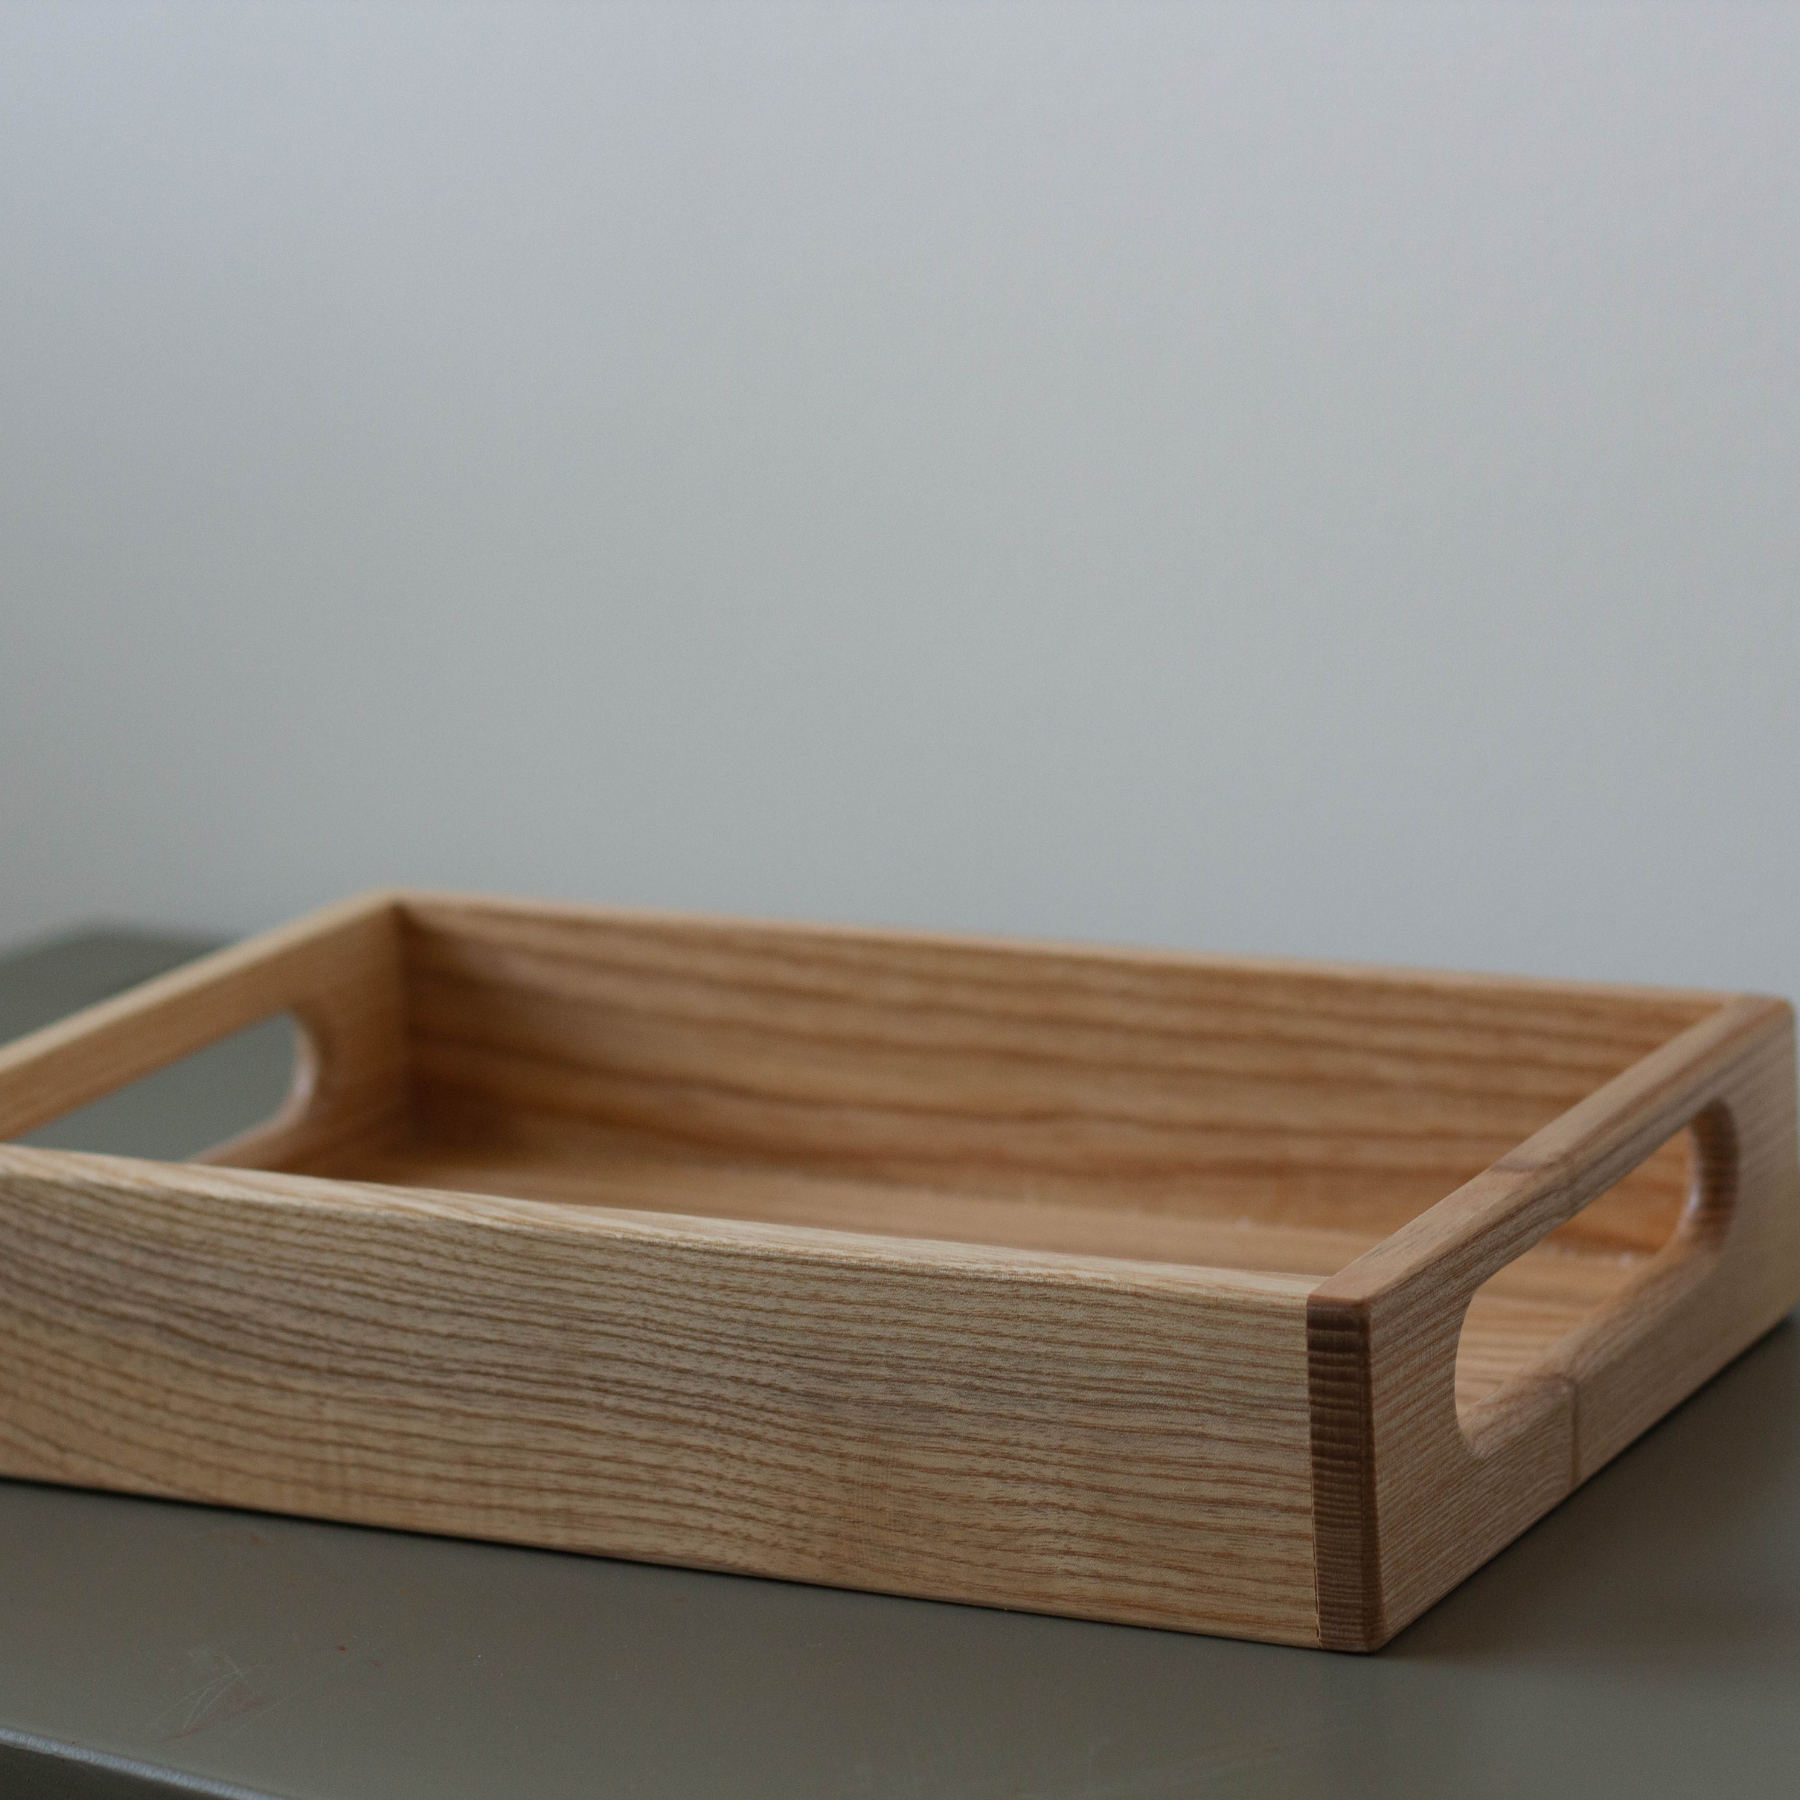 Montessori wooden tray